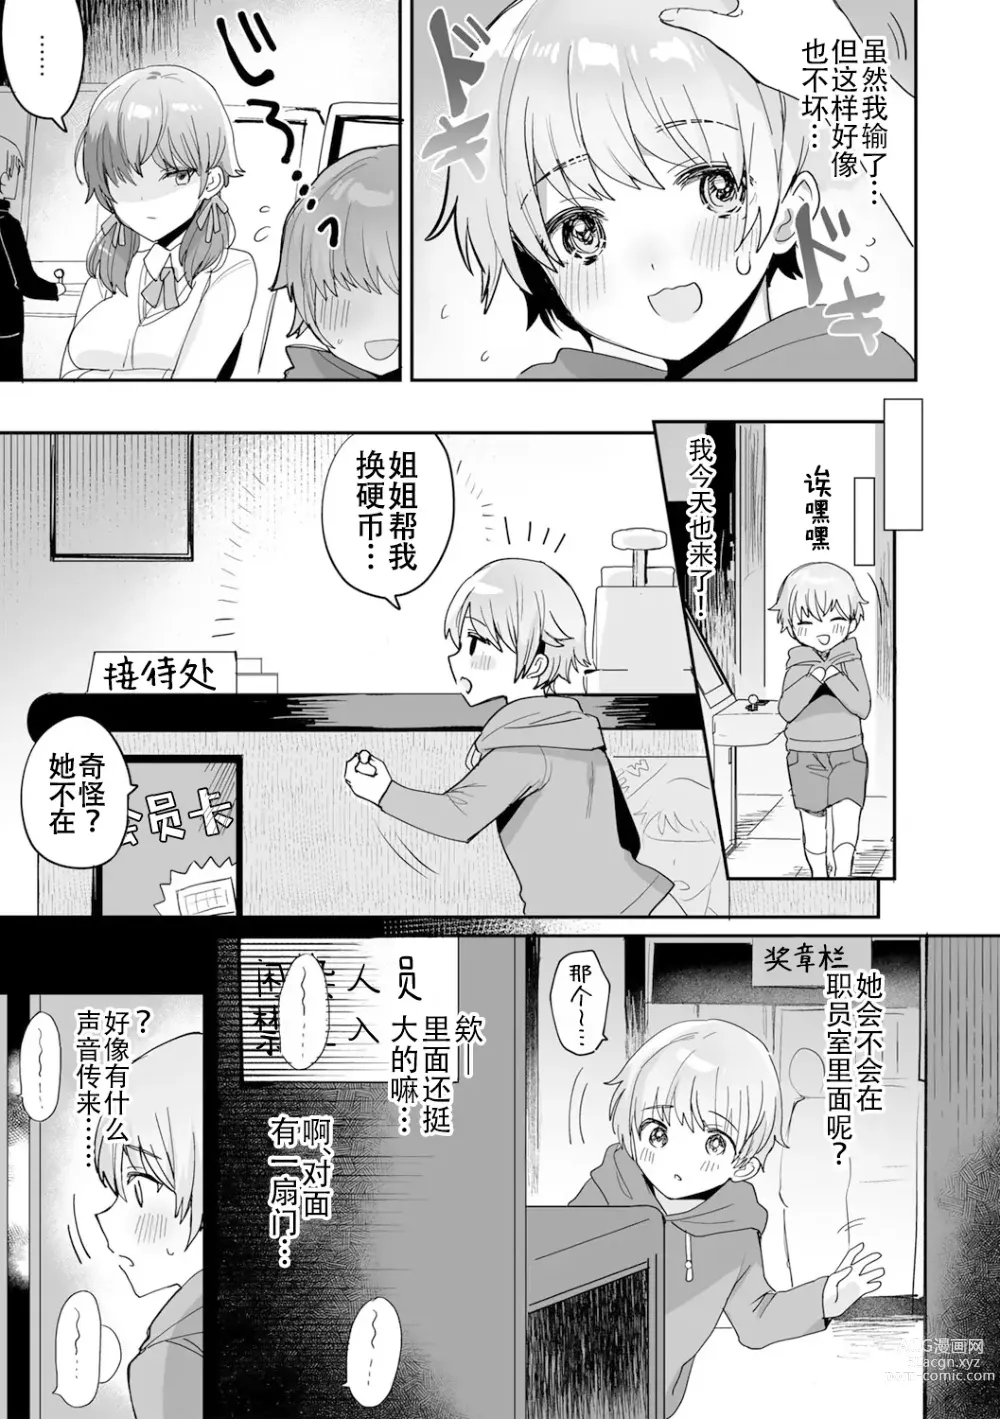 Page 5 of manga 游戏结束！~杂鱼正太君与雌小鬼小姐~